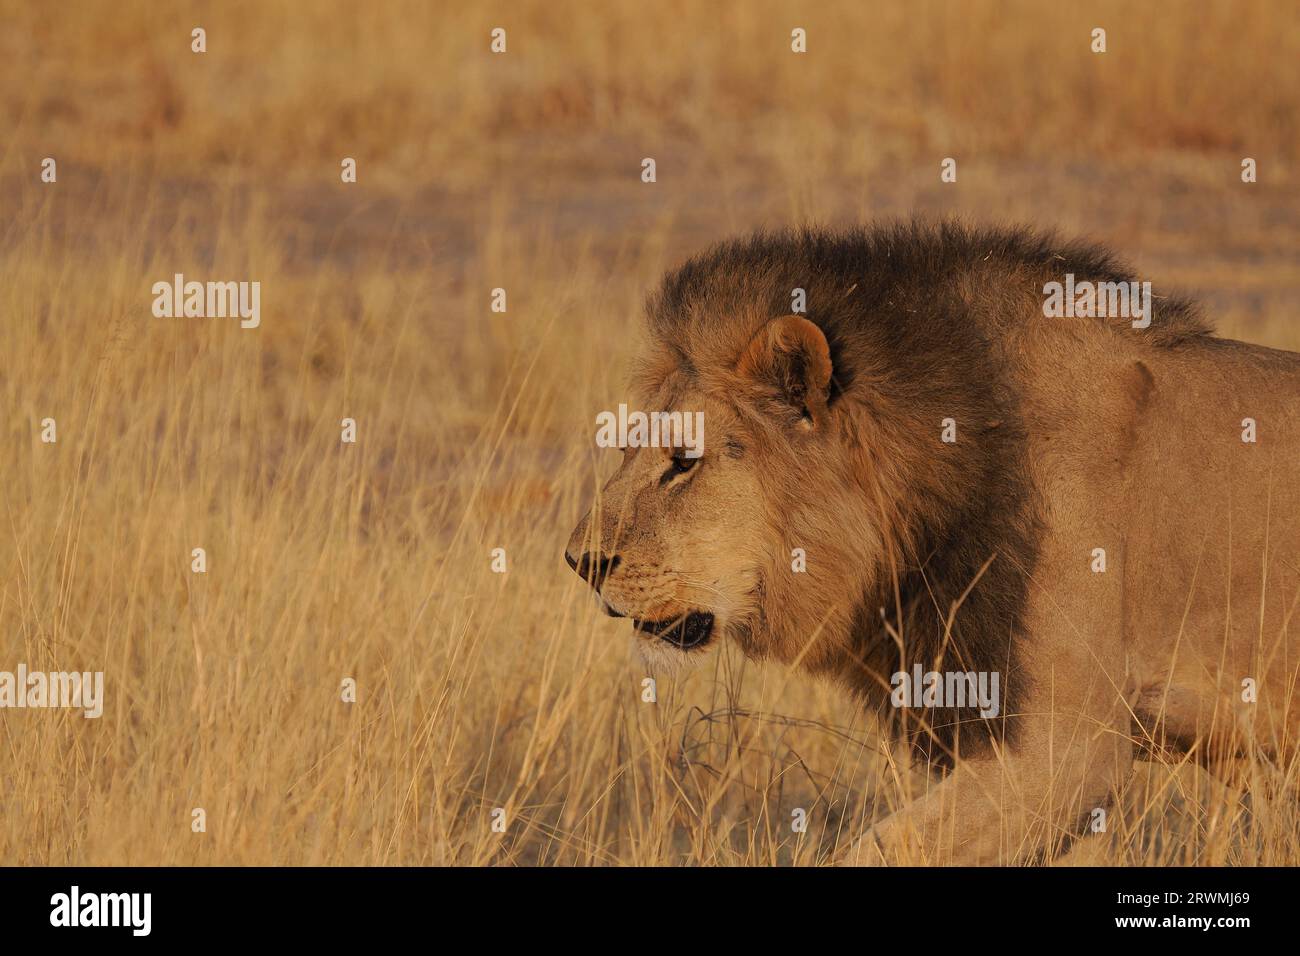 Ces images ont été pour la plupart prises tôt le matin, les lions ayant eu une chasse nocturne réussie par la taille de leur estomac. Banque D'Images